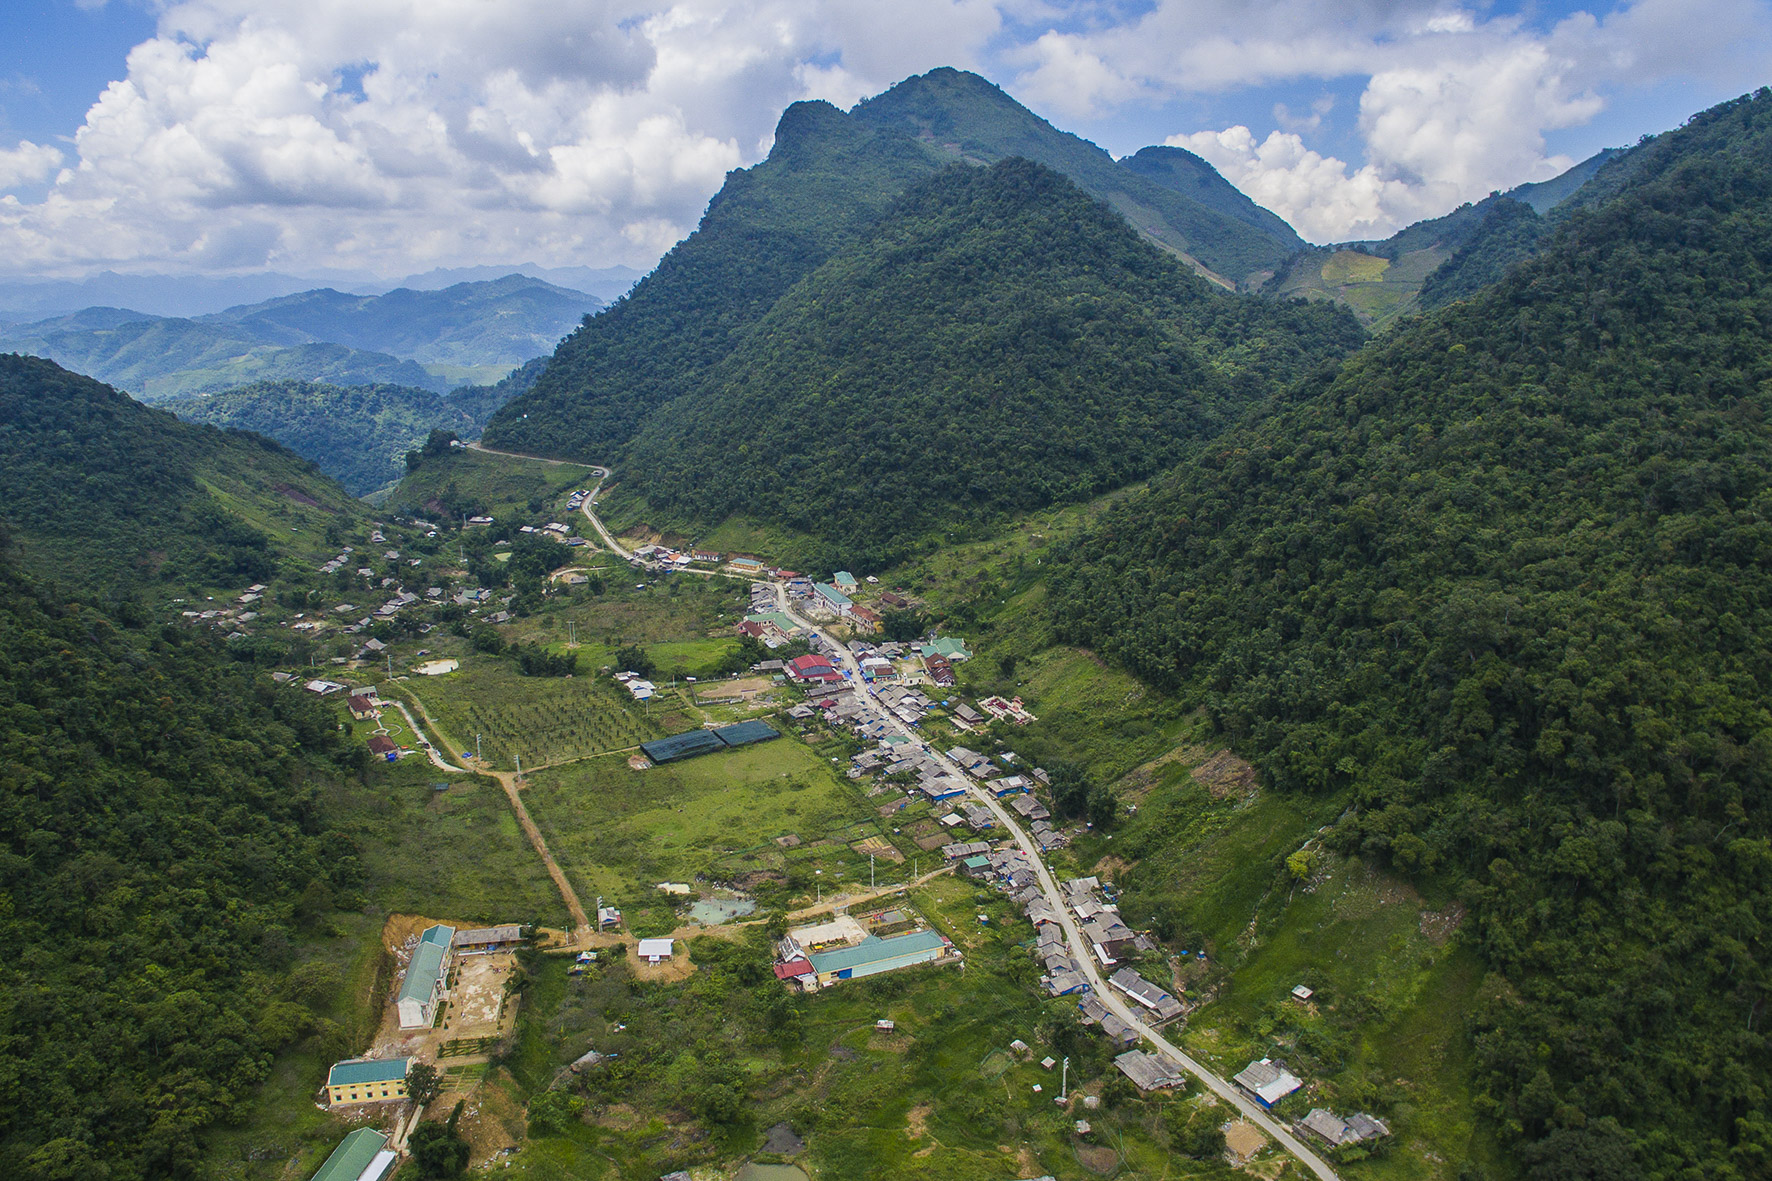 Hơn 98% trong tổng diện tích 200.000 ha của huyện Kỳ Sơn là đồi núi.